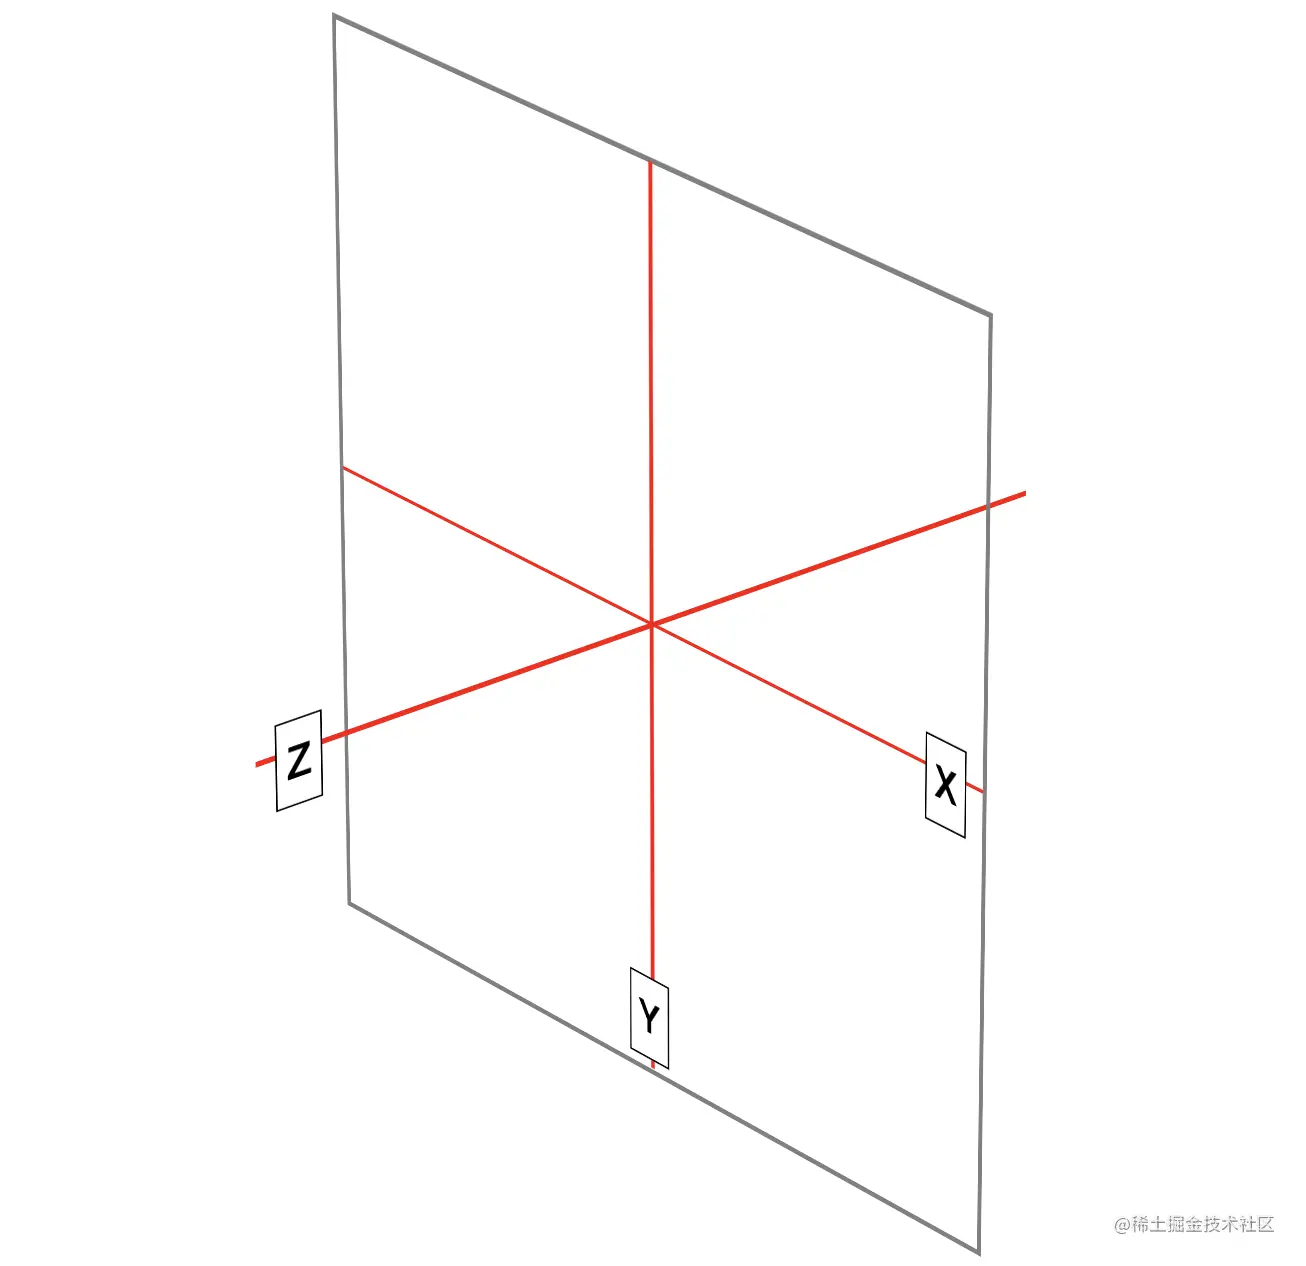 变形功能表示笛卡尔坐标系的三个轴